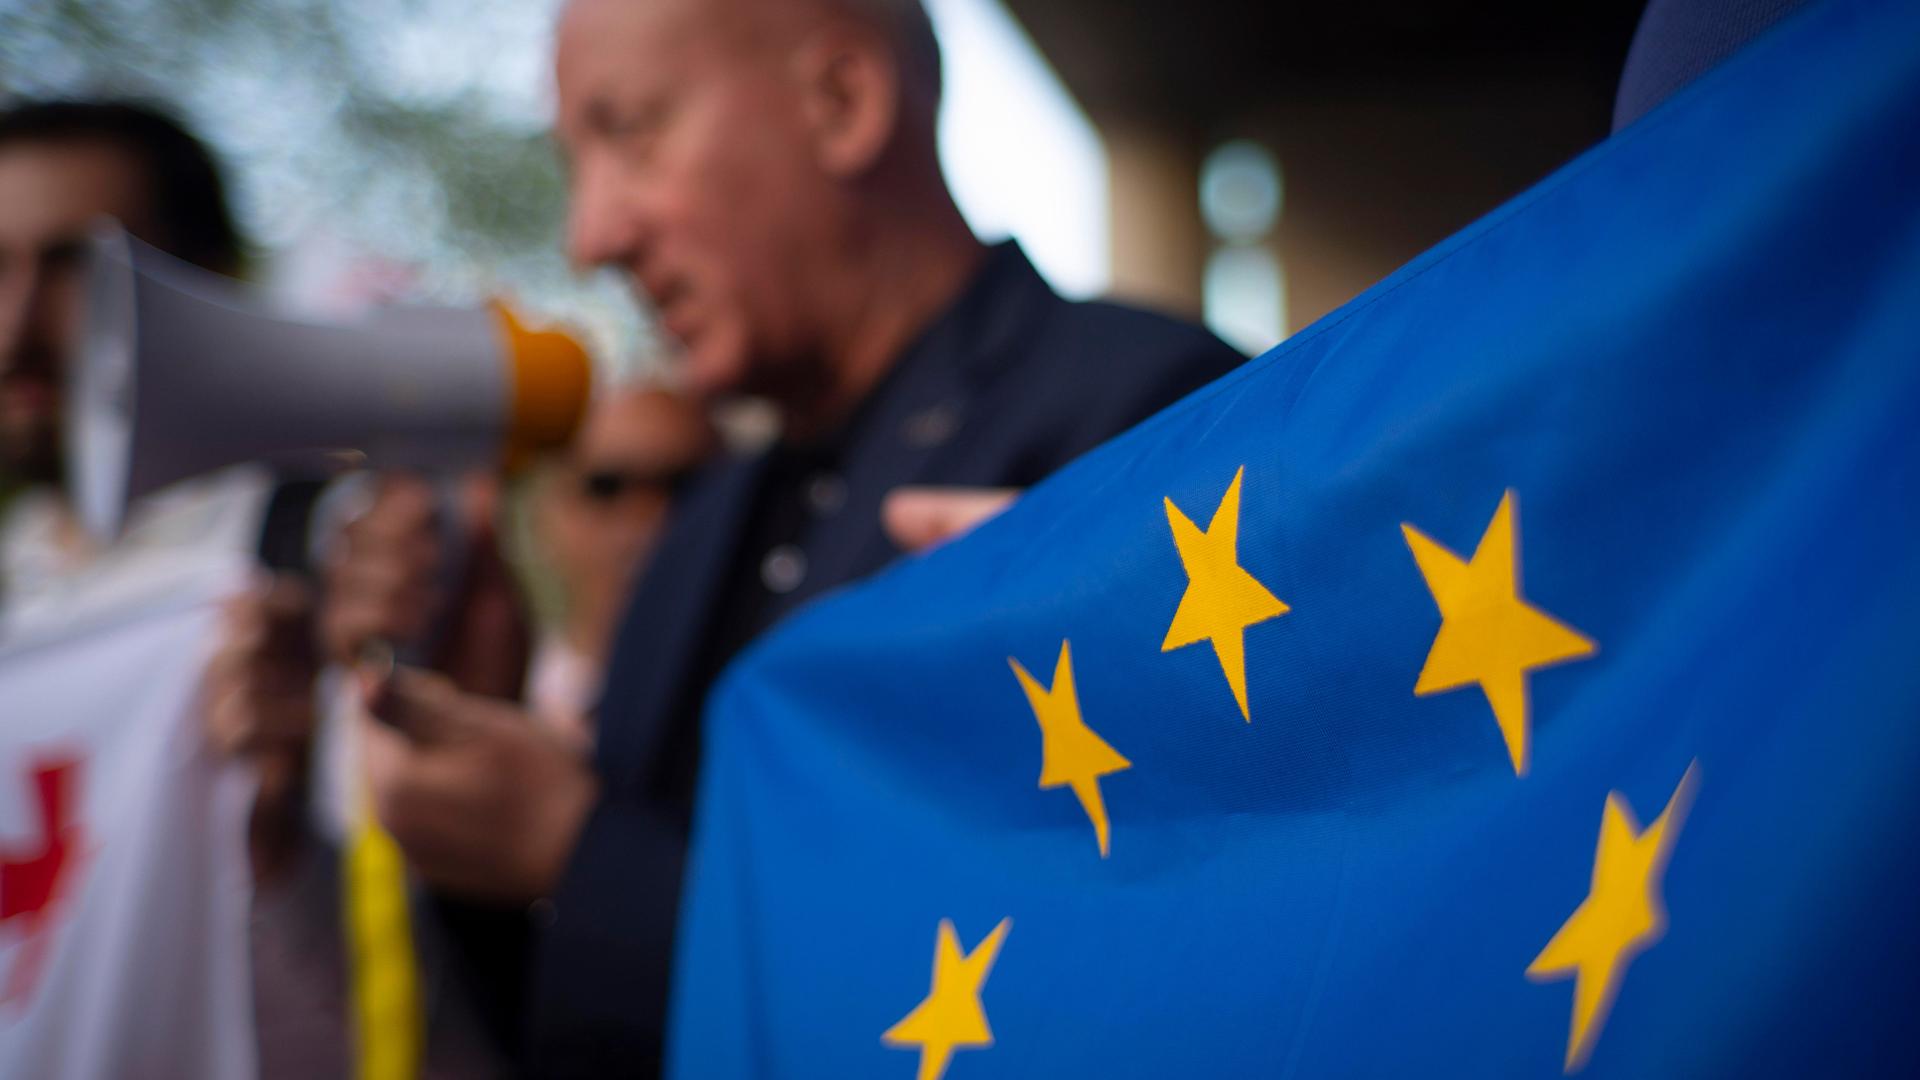 Ein Mann hält ein Megafon in der Hand, daneben ist eine EU-Flagge zu sehen.